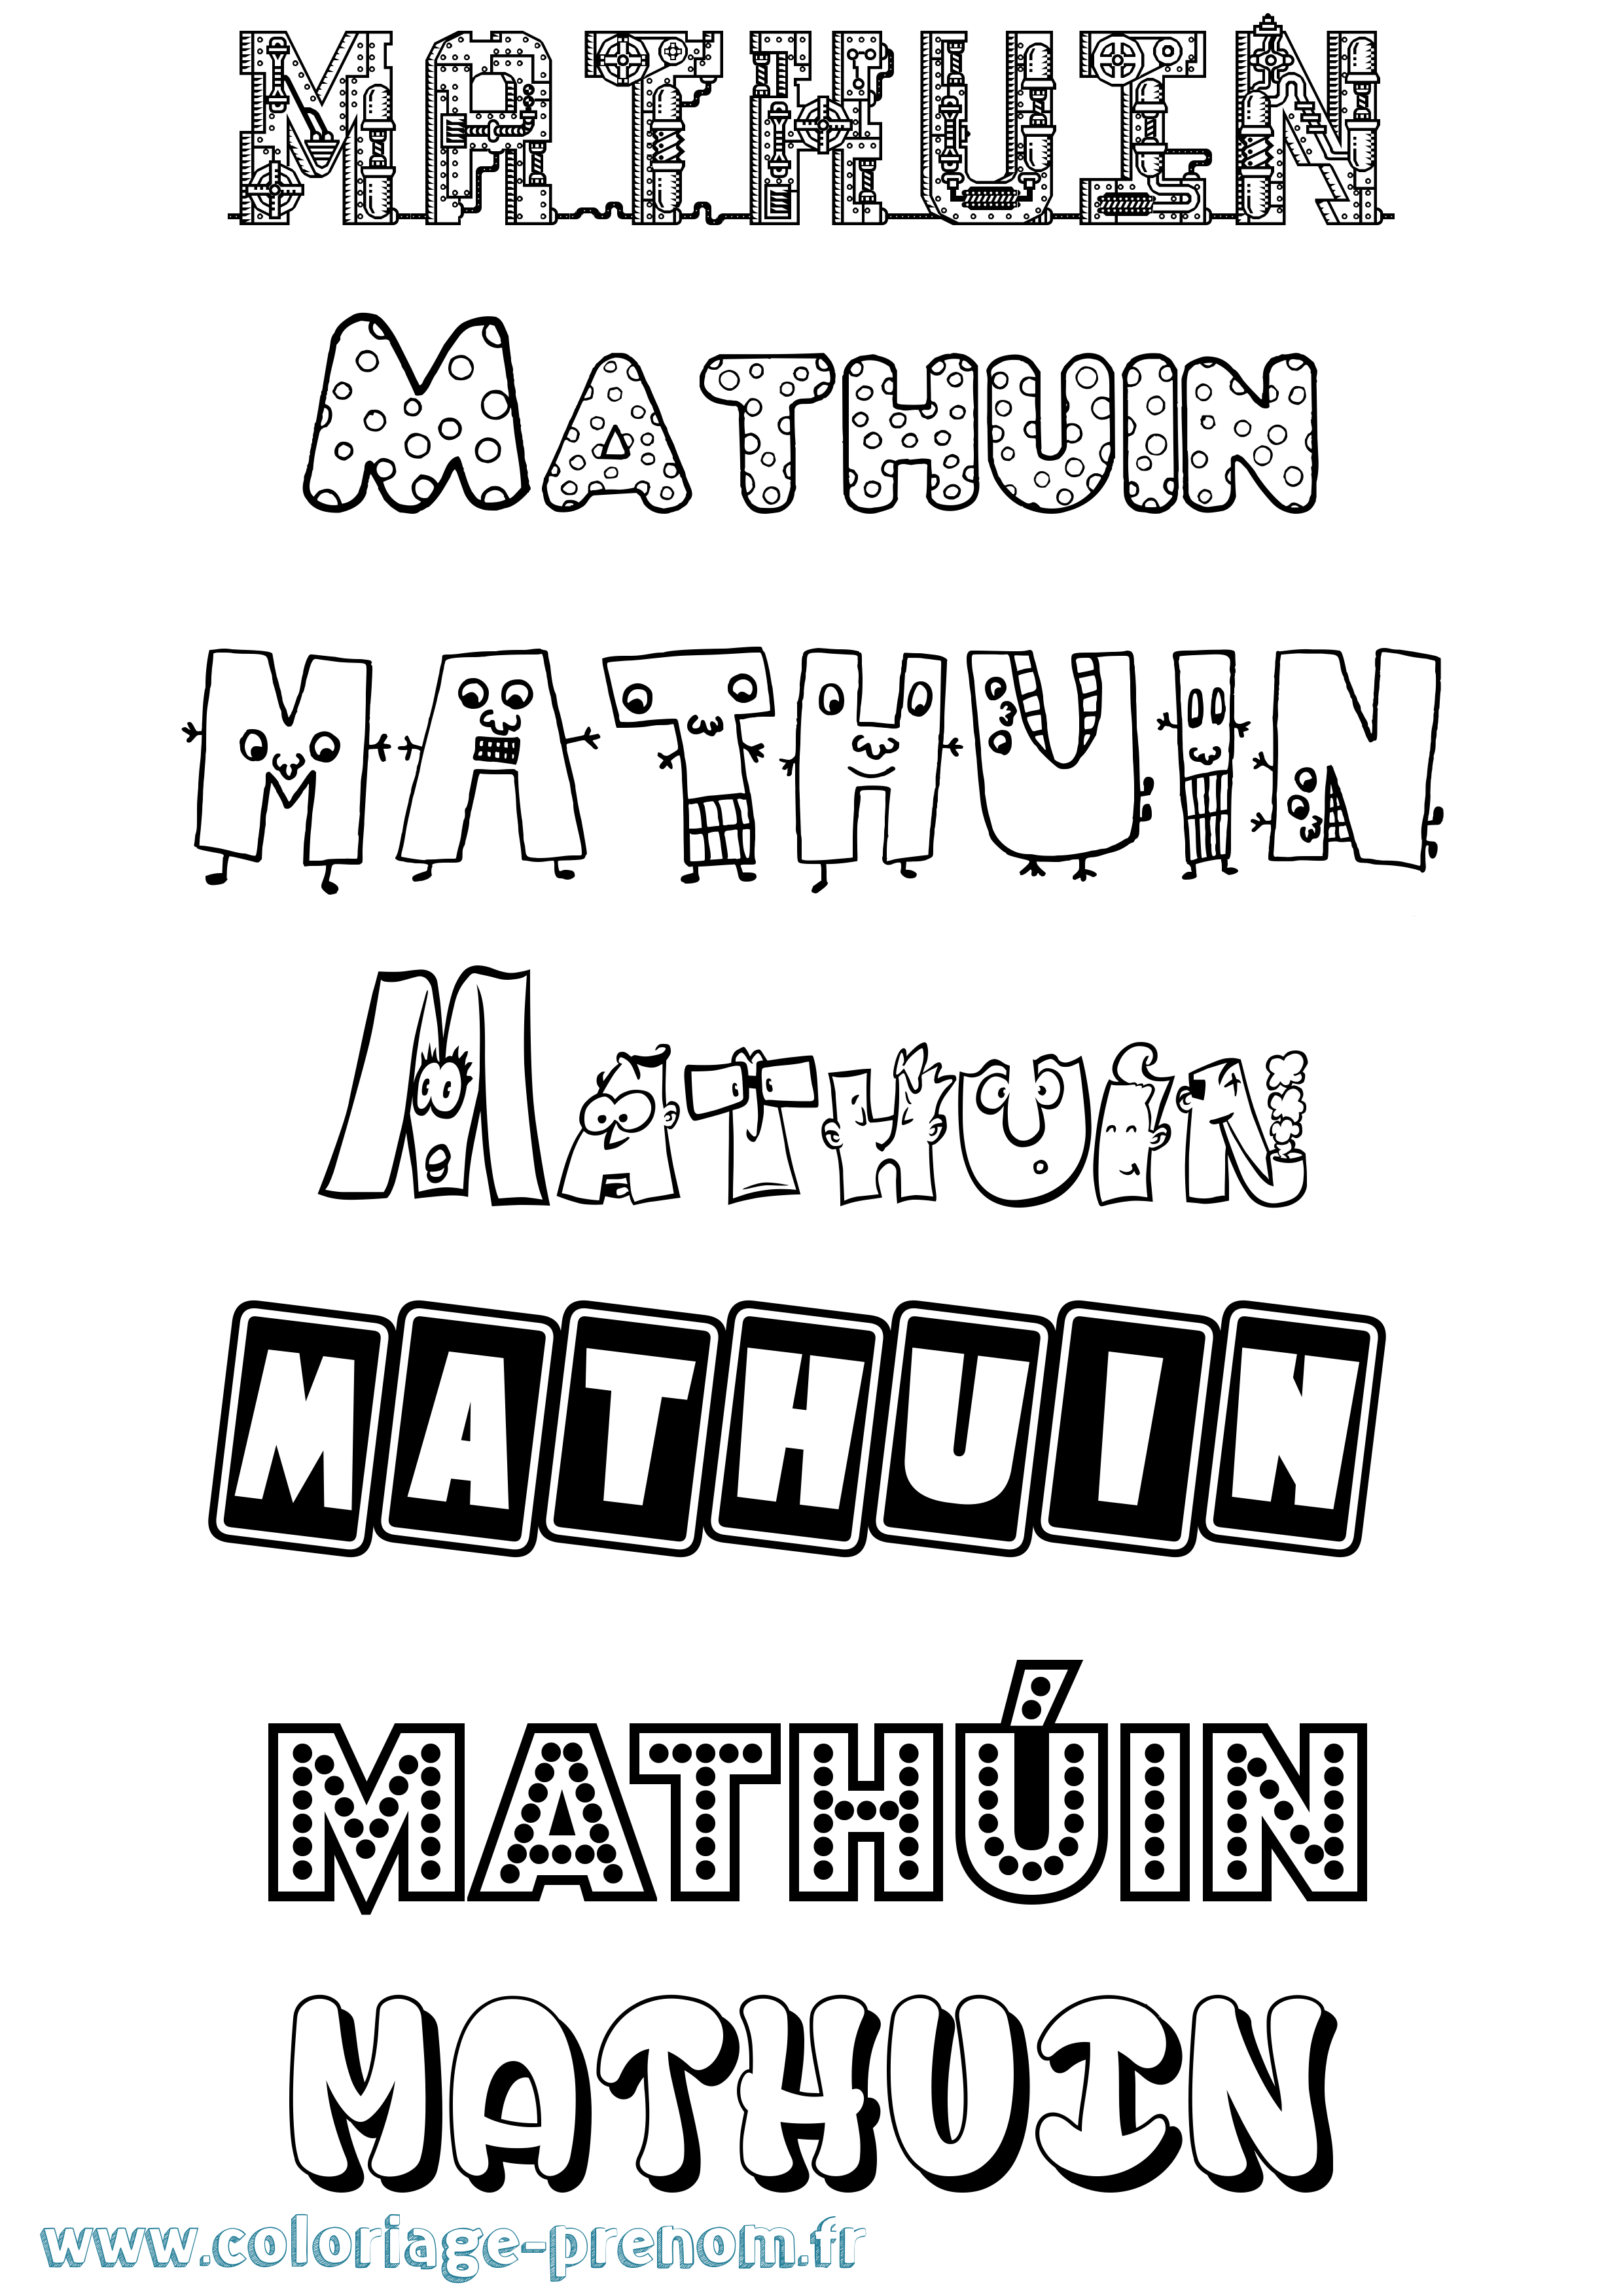 Coloriage prénom Mathúin Fun